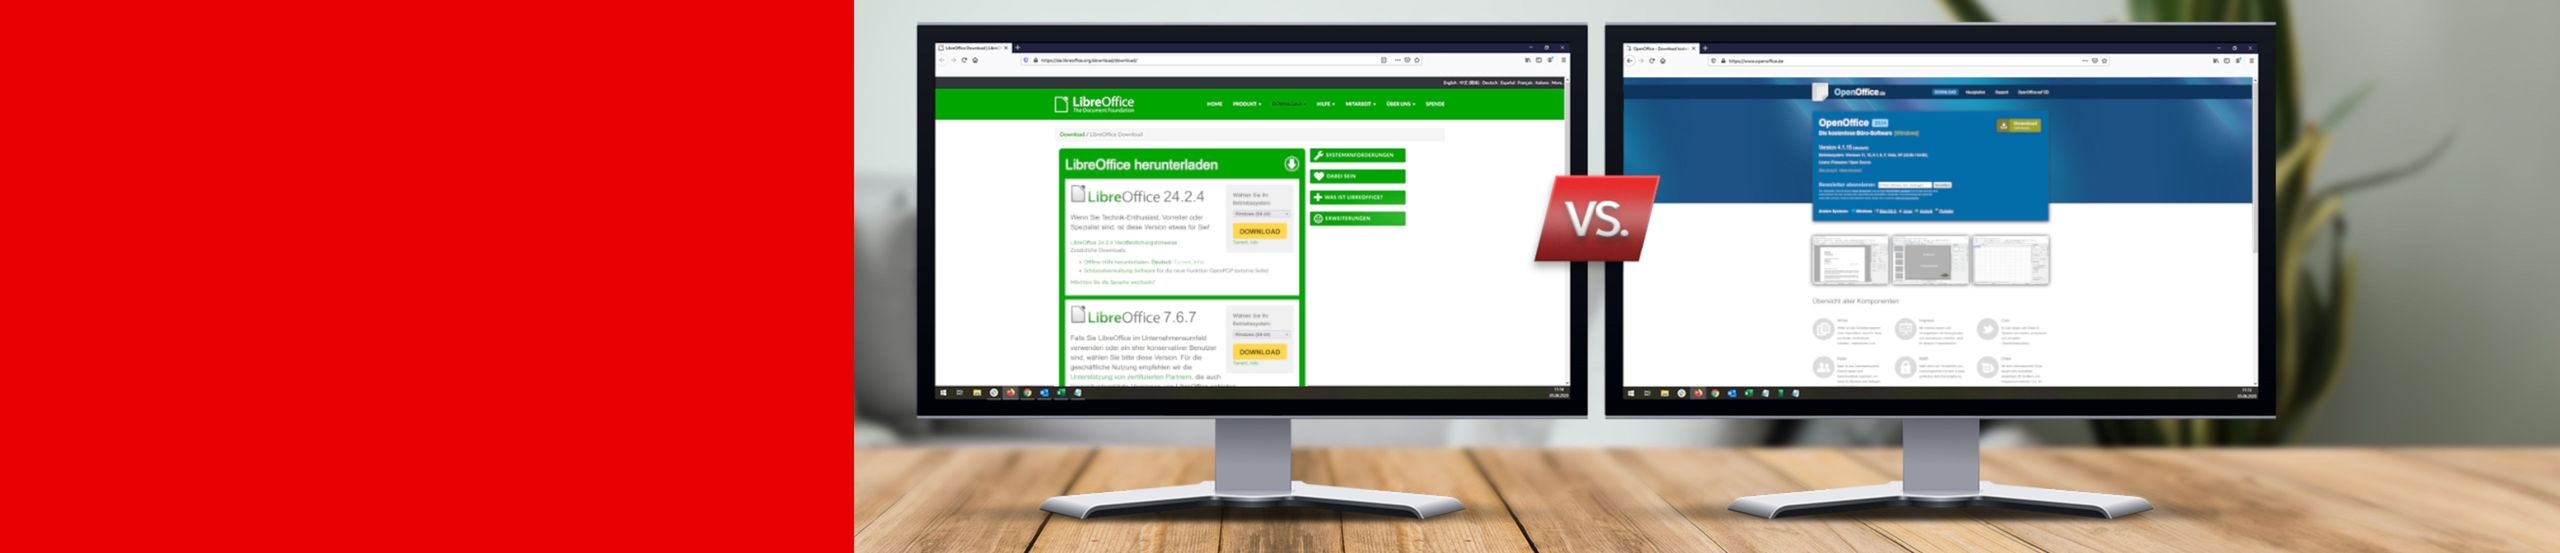 Zwei Monitore stehen nebeneinander mit den jeweiligen Webseiten von LibreOffice und OpenOffice